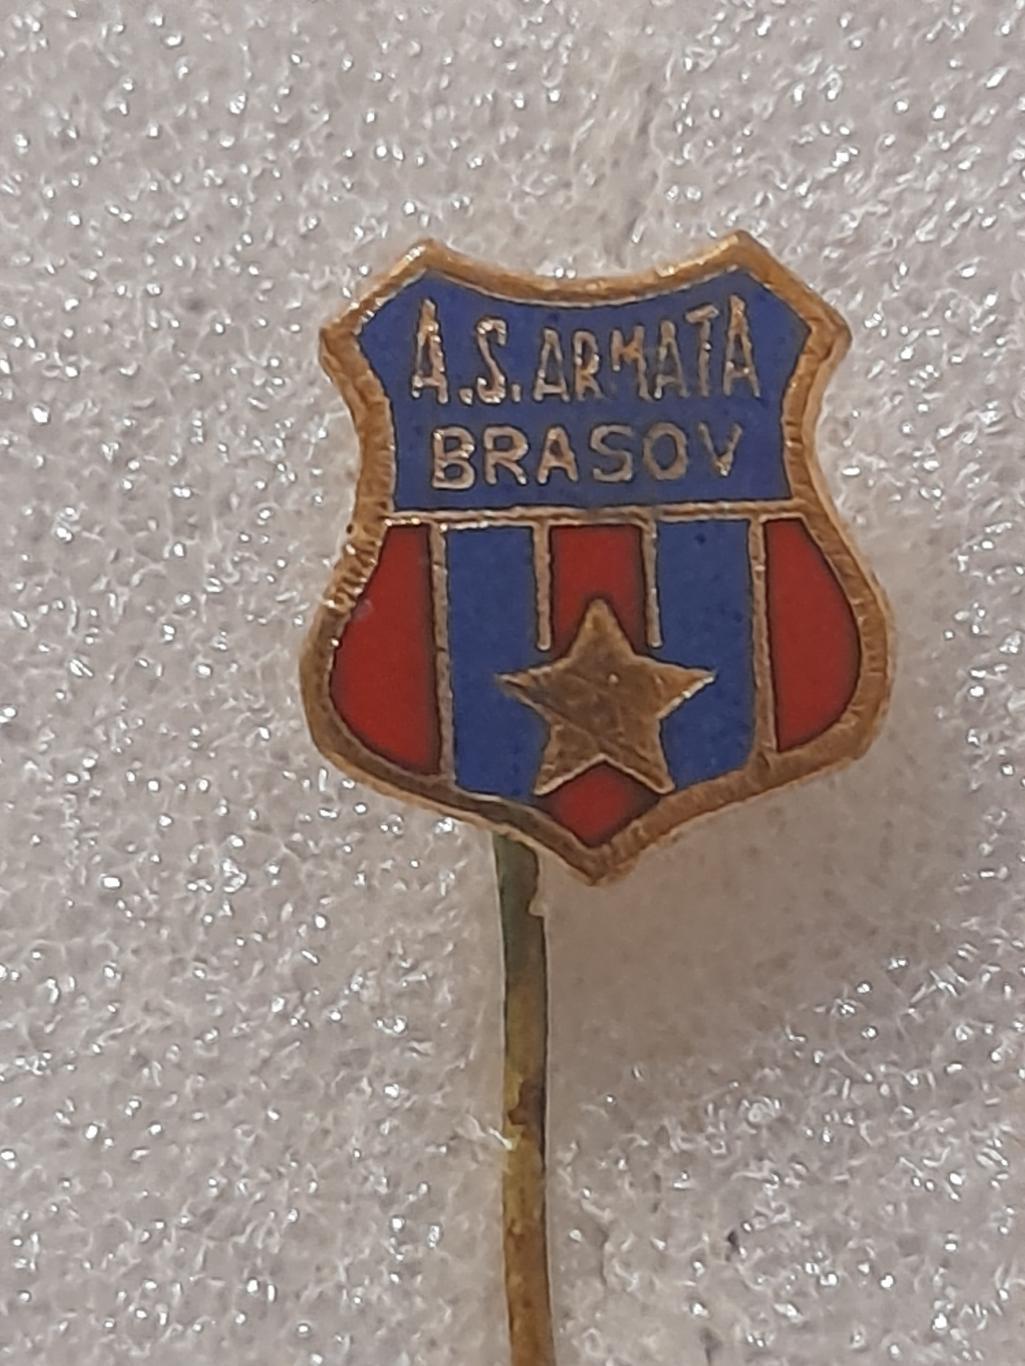 ФК Армата, Брашов (Румунія)/ FC Armata, Brasov (Romania)(2)оригінал